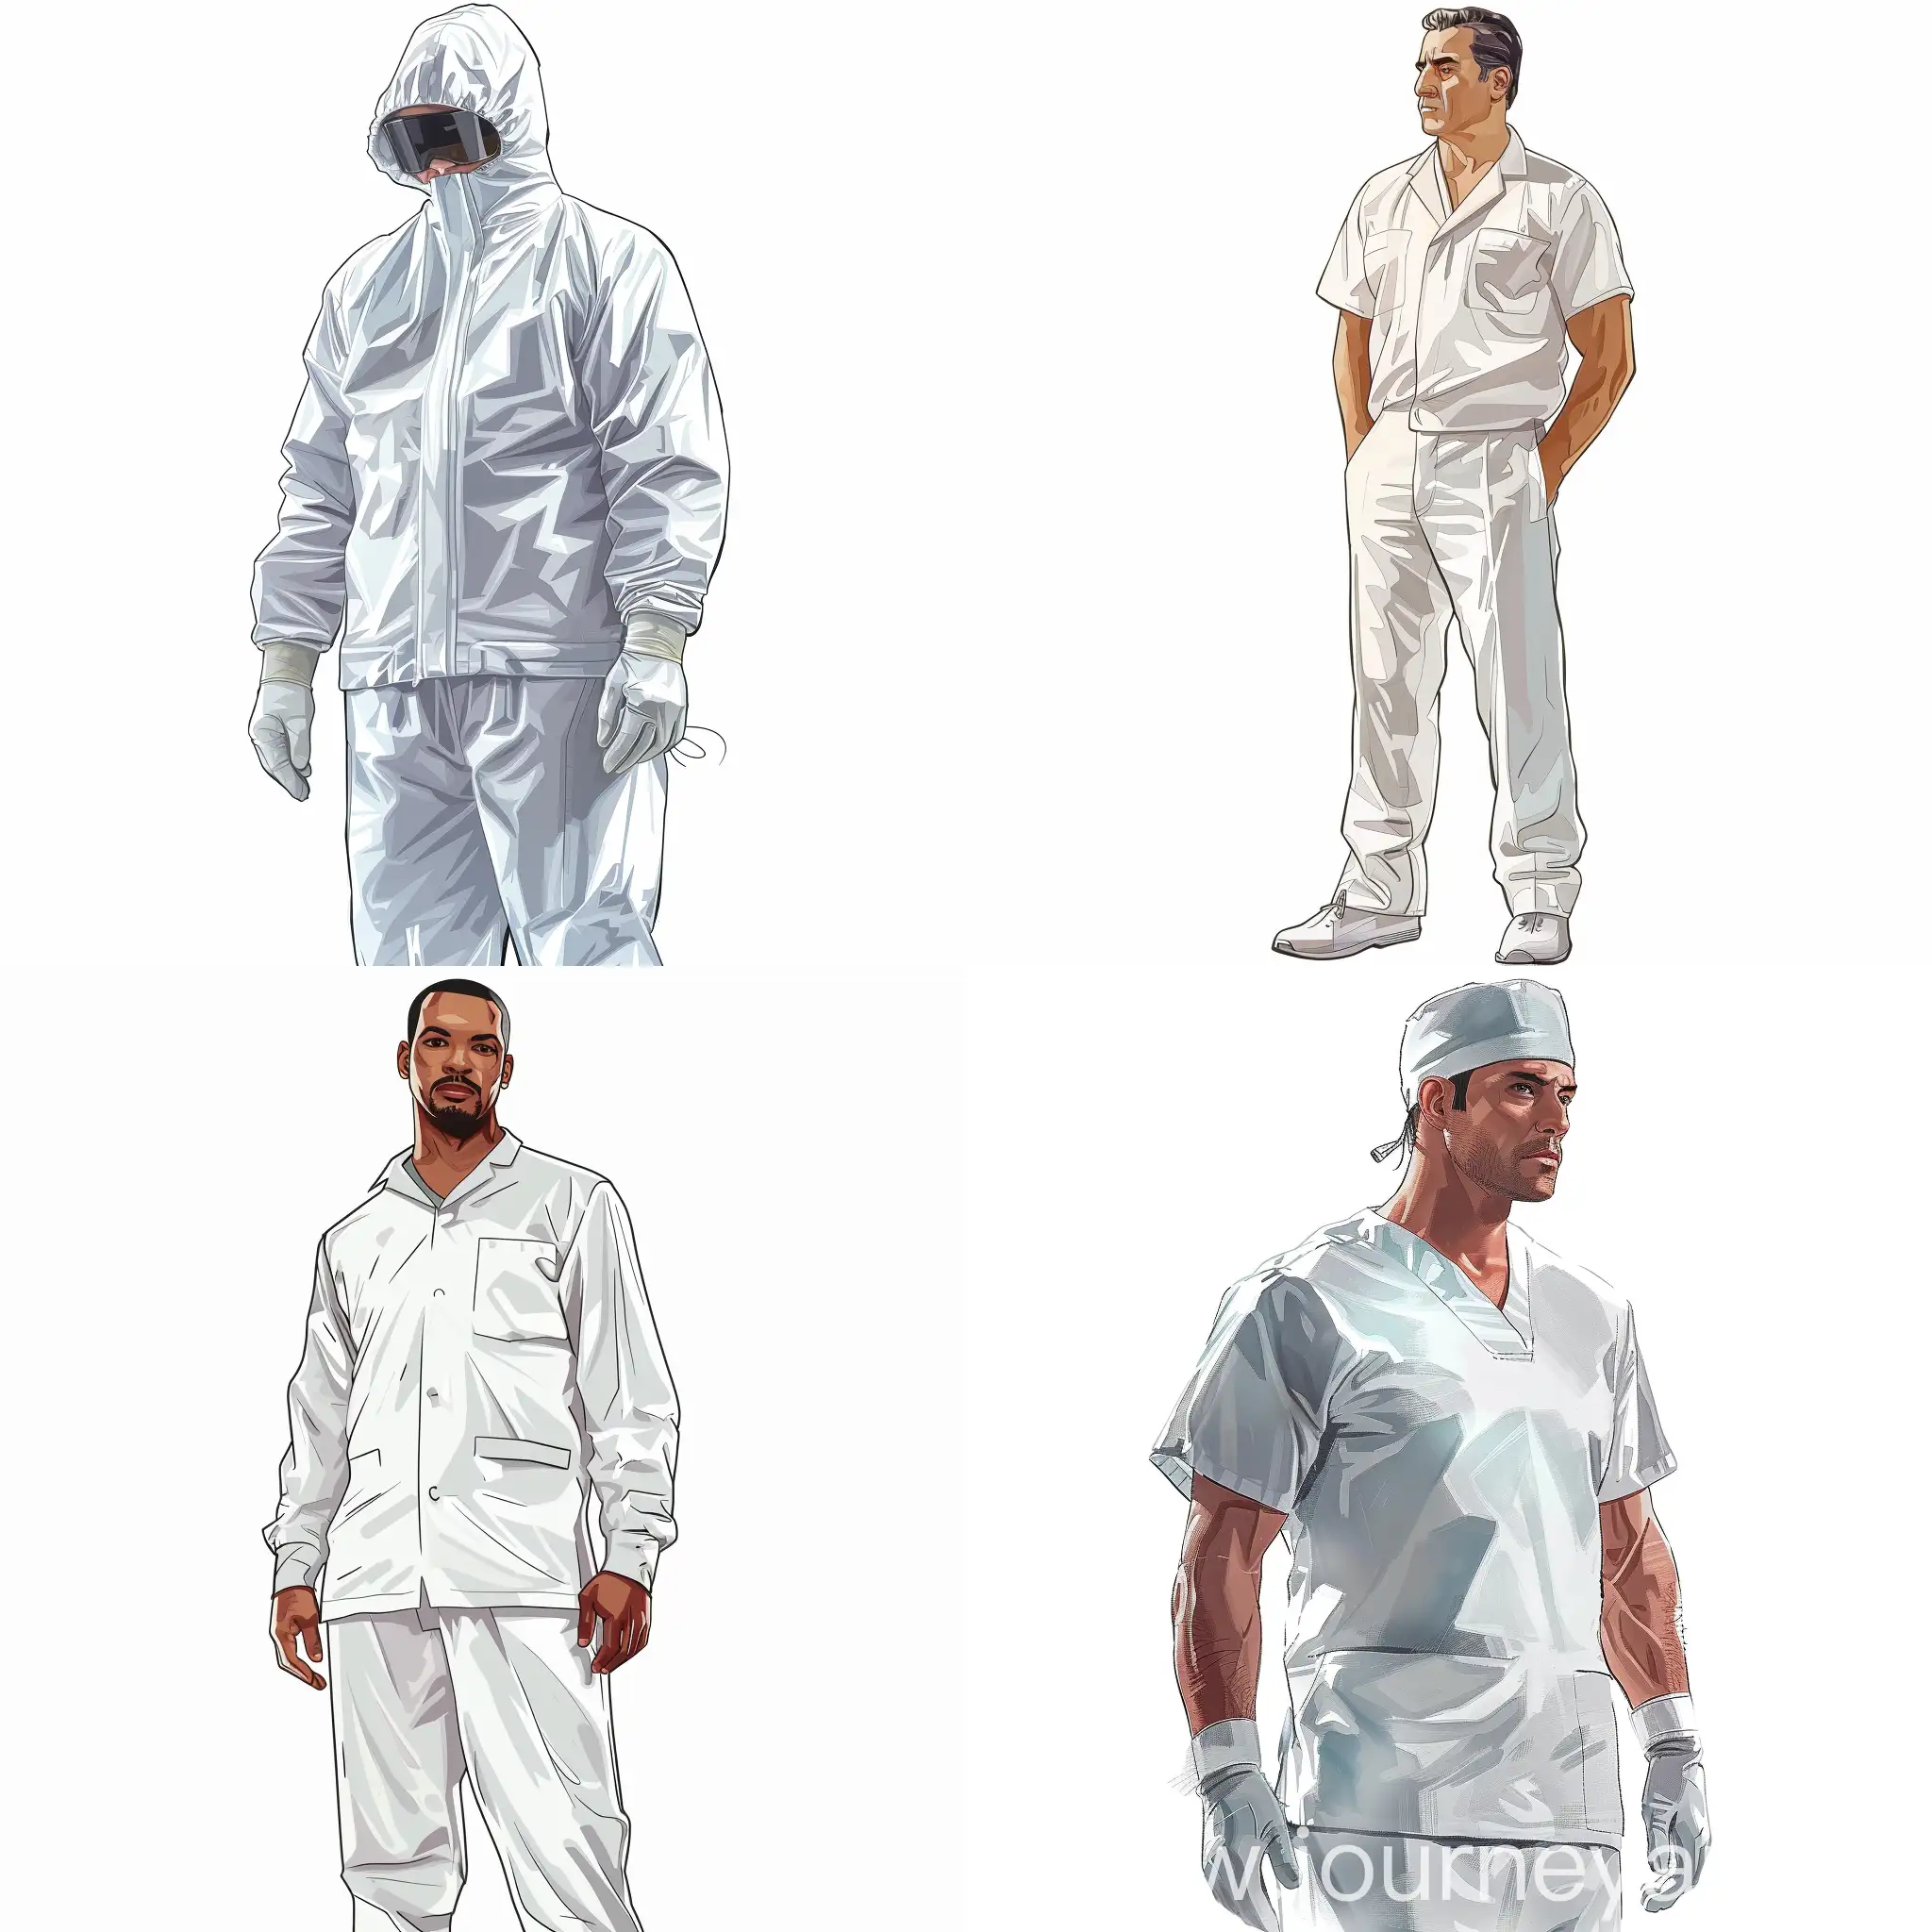 Surgeon-in-White-Uniform-GTA-5-Style-Illustration